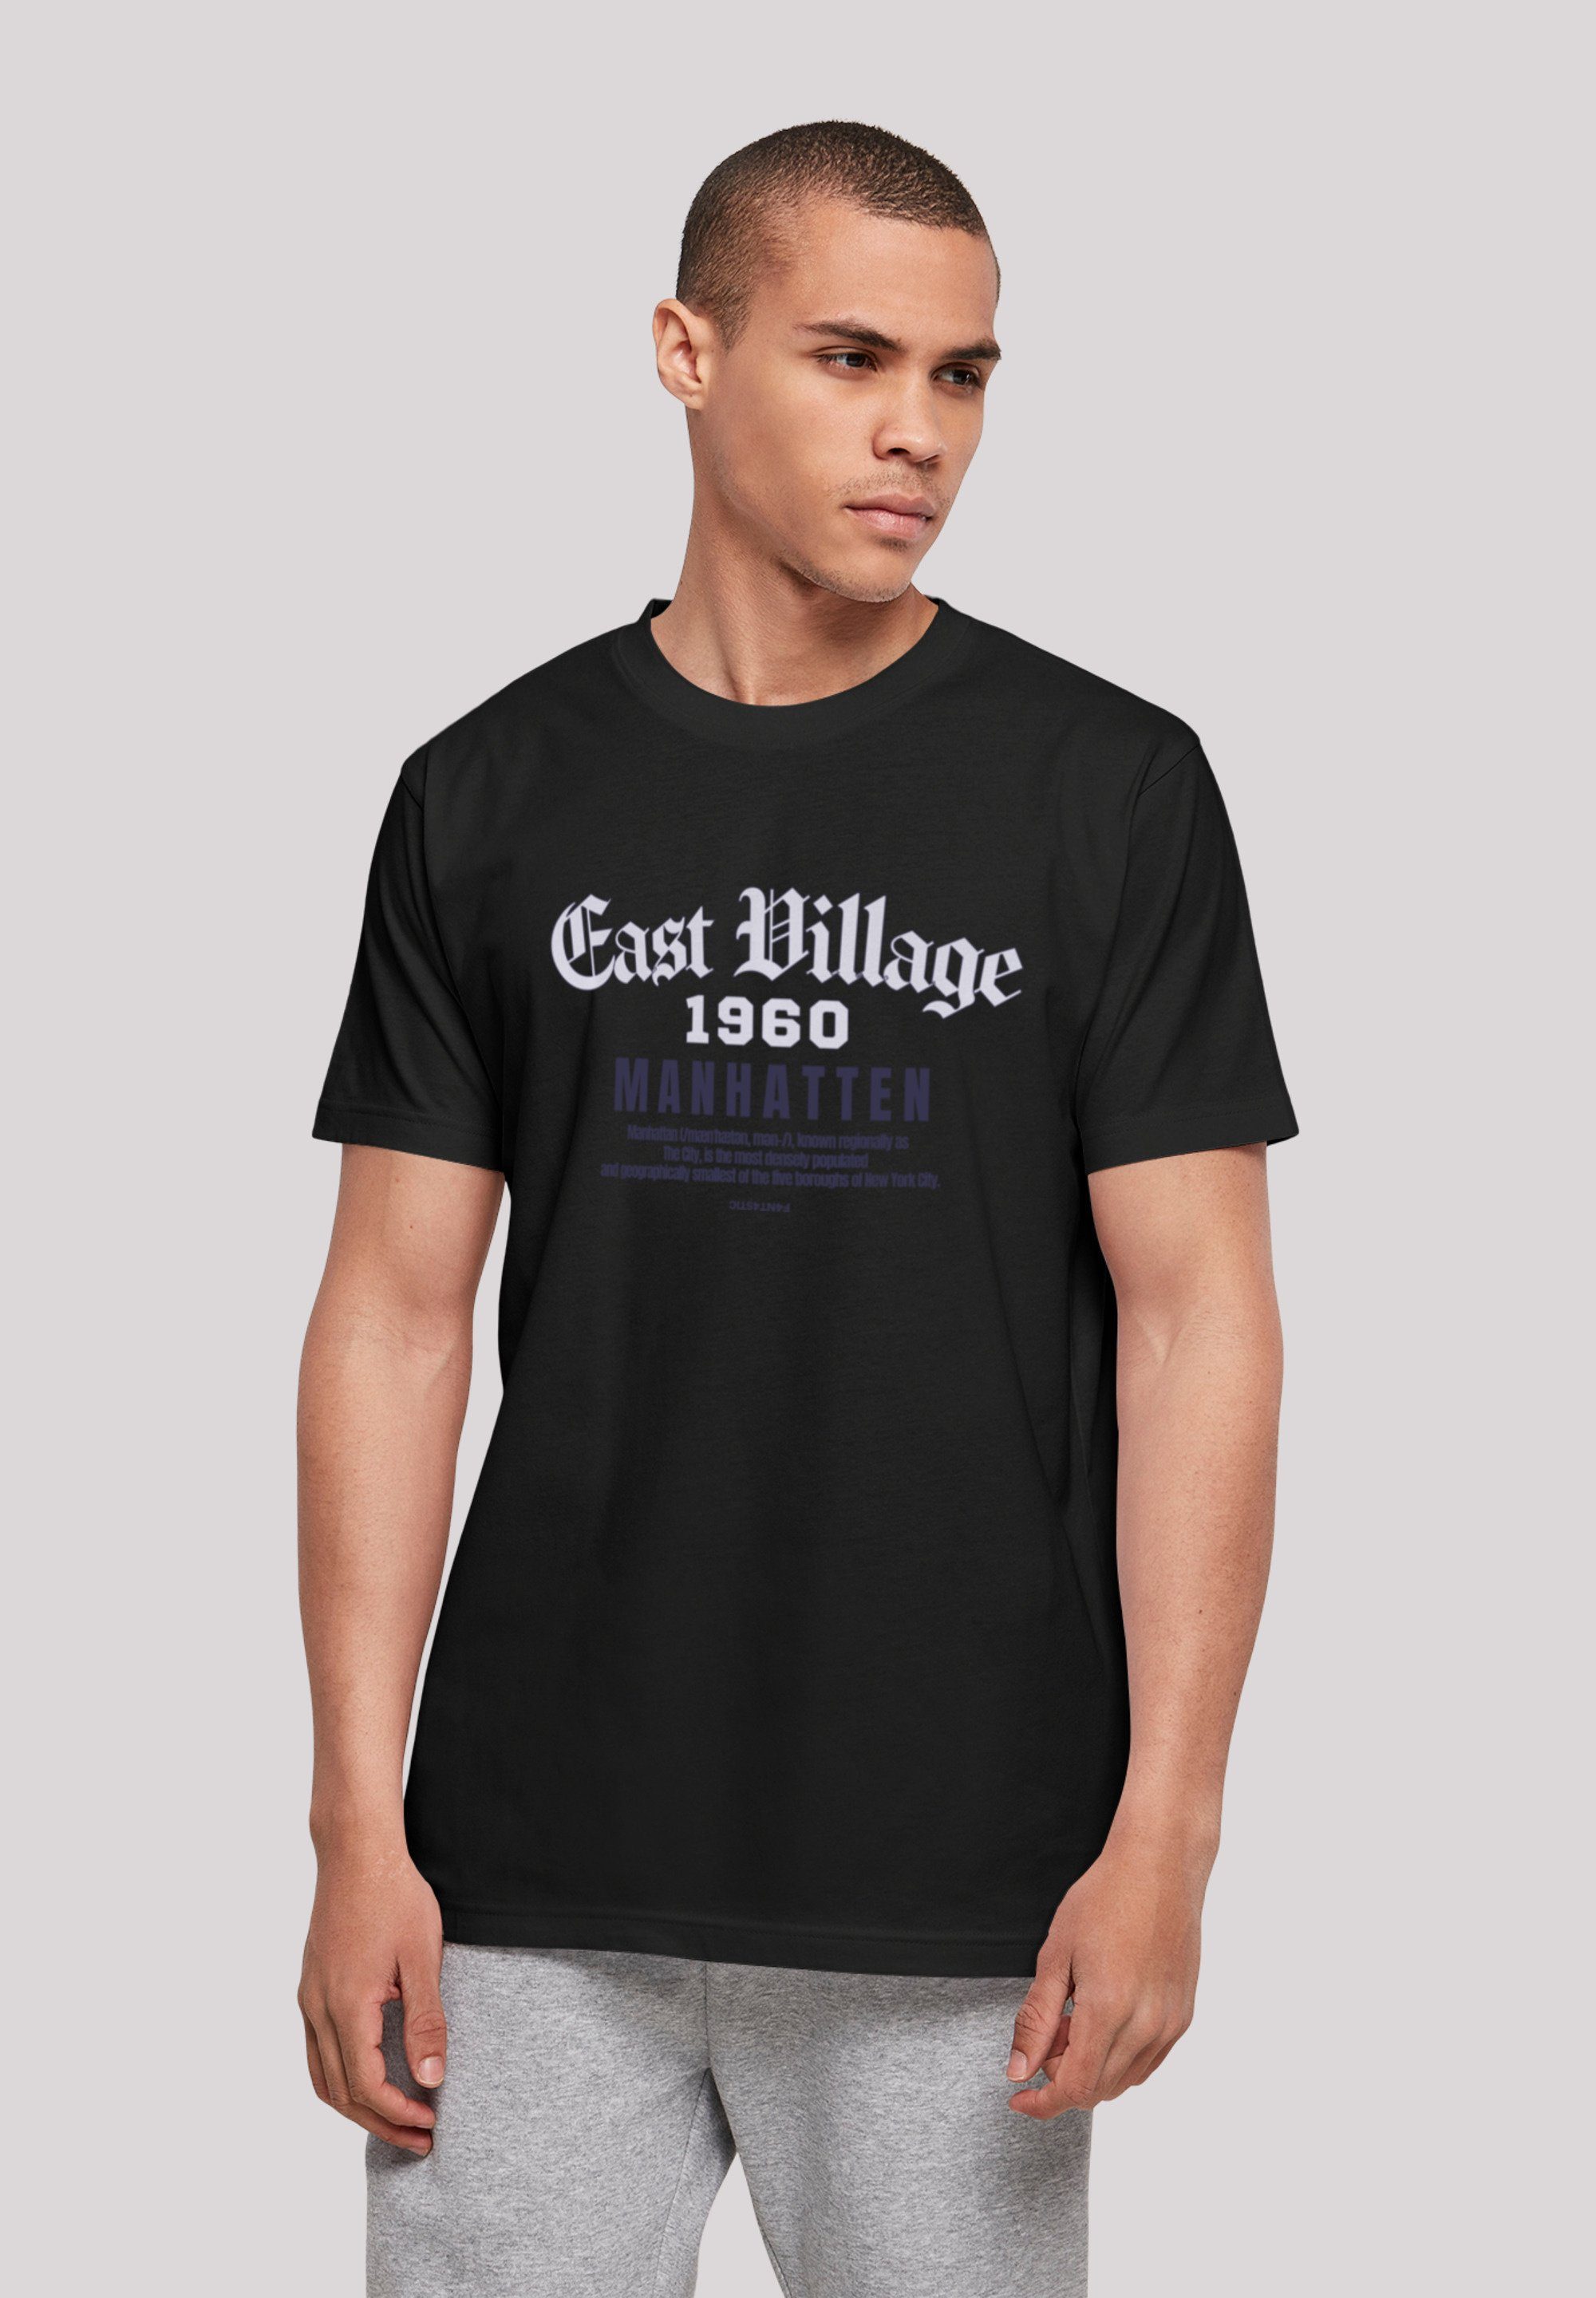 schwarz East TEE UNISEX T-Shirt Village Print F4NT4STIC Manhatten